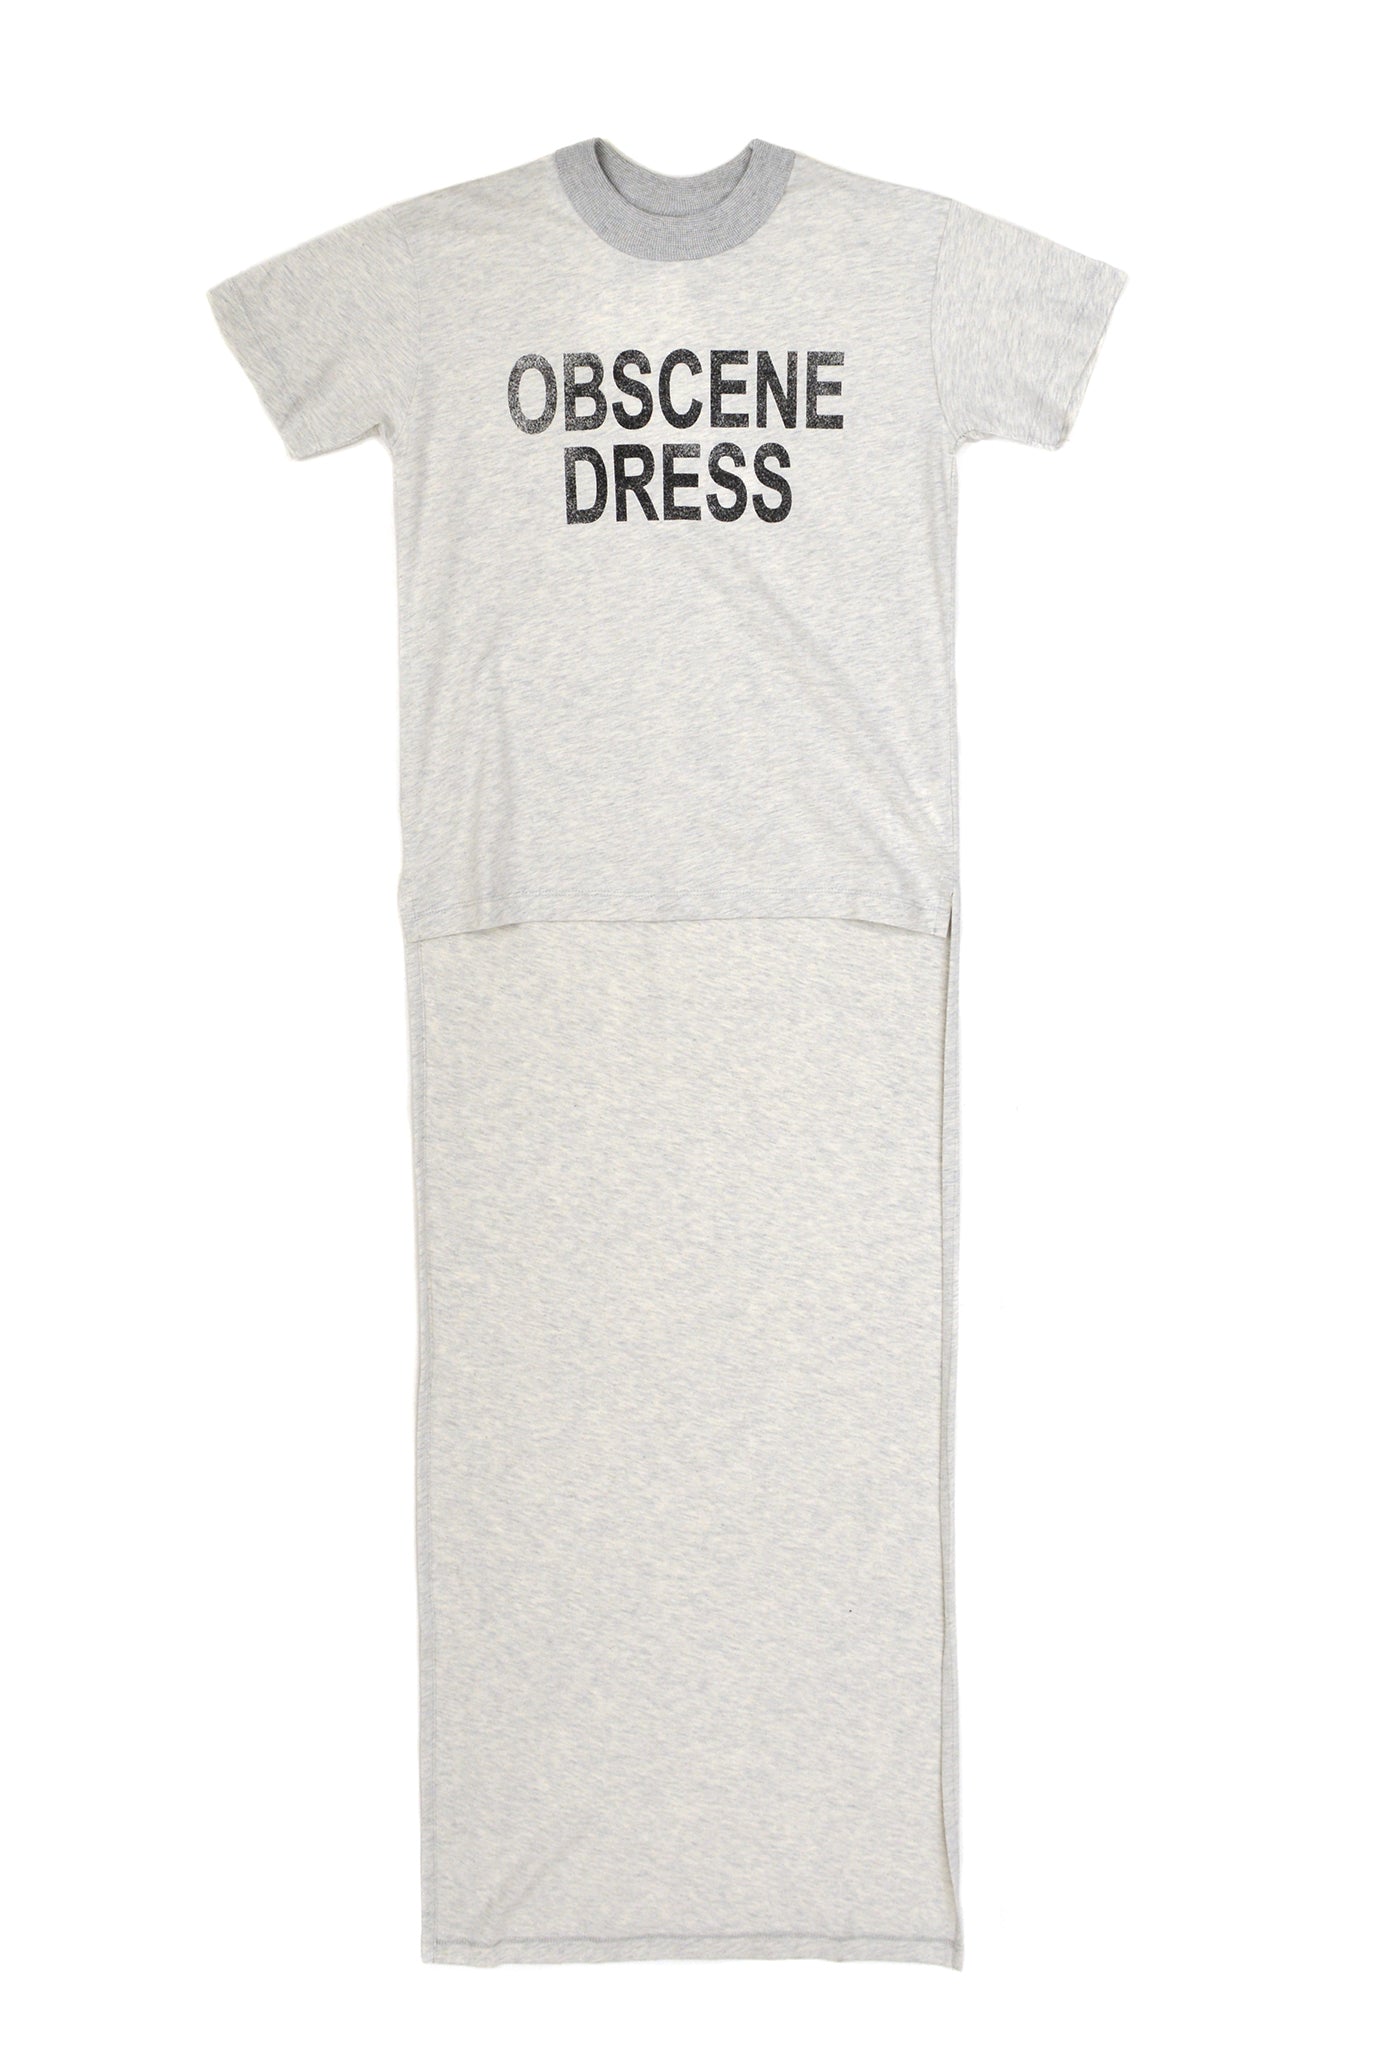 Vaquera Obscene Dress T-shirt